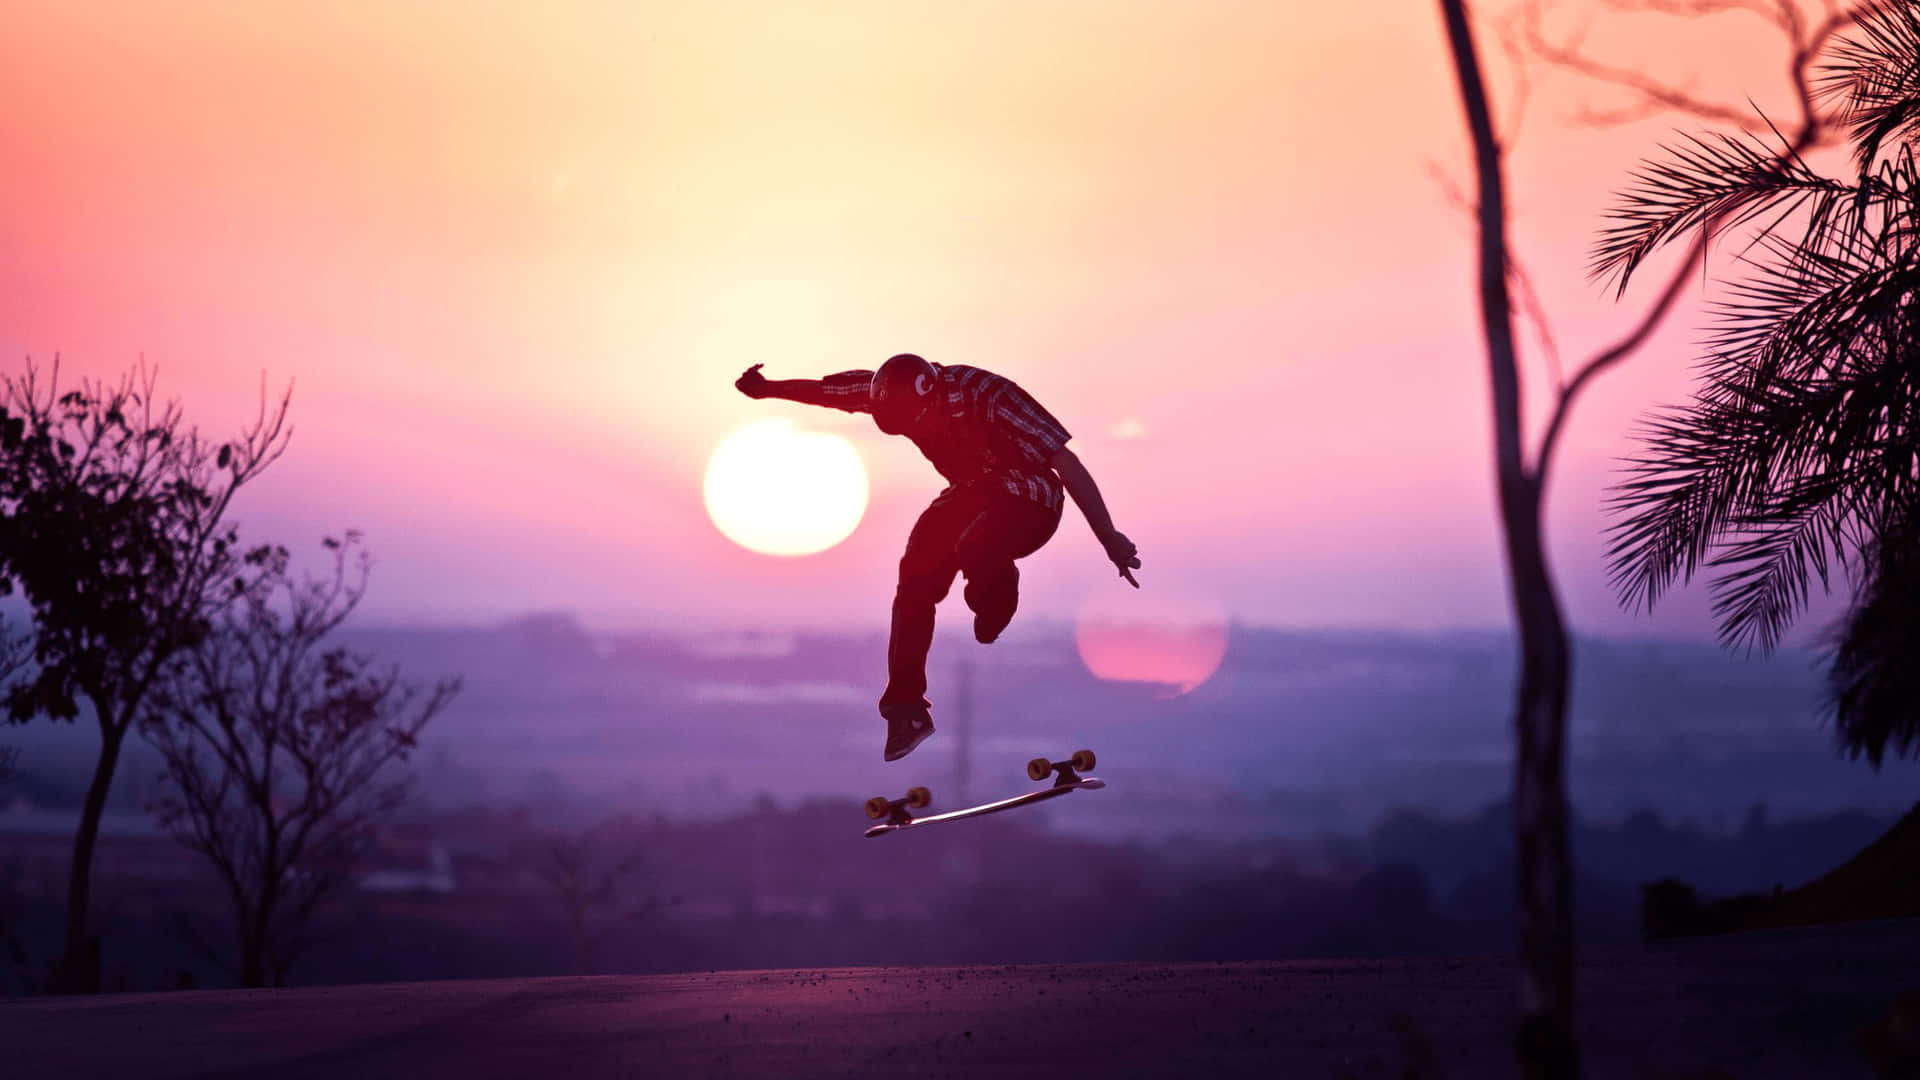 Skateboarding Sunset Silhouette Wallpaper